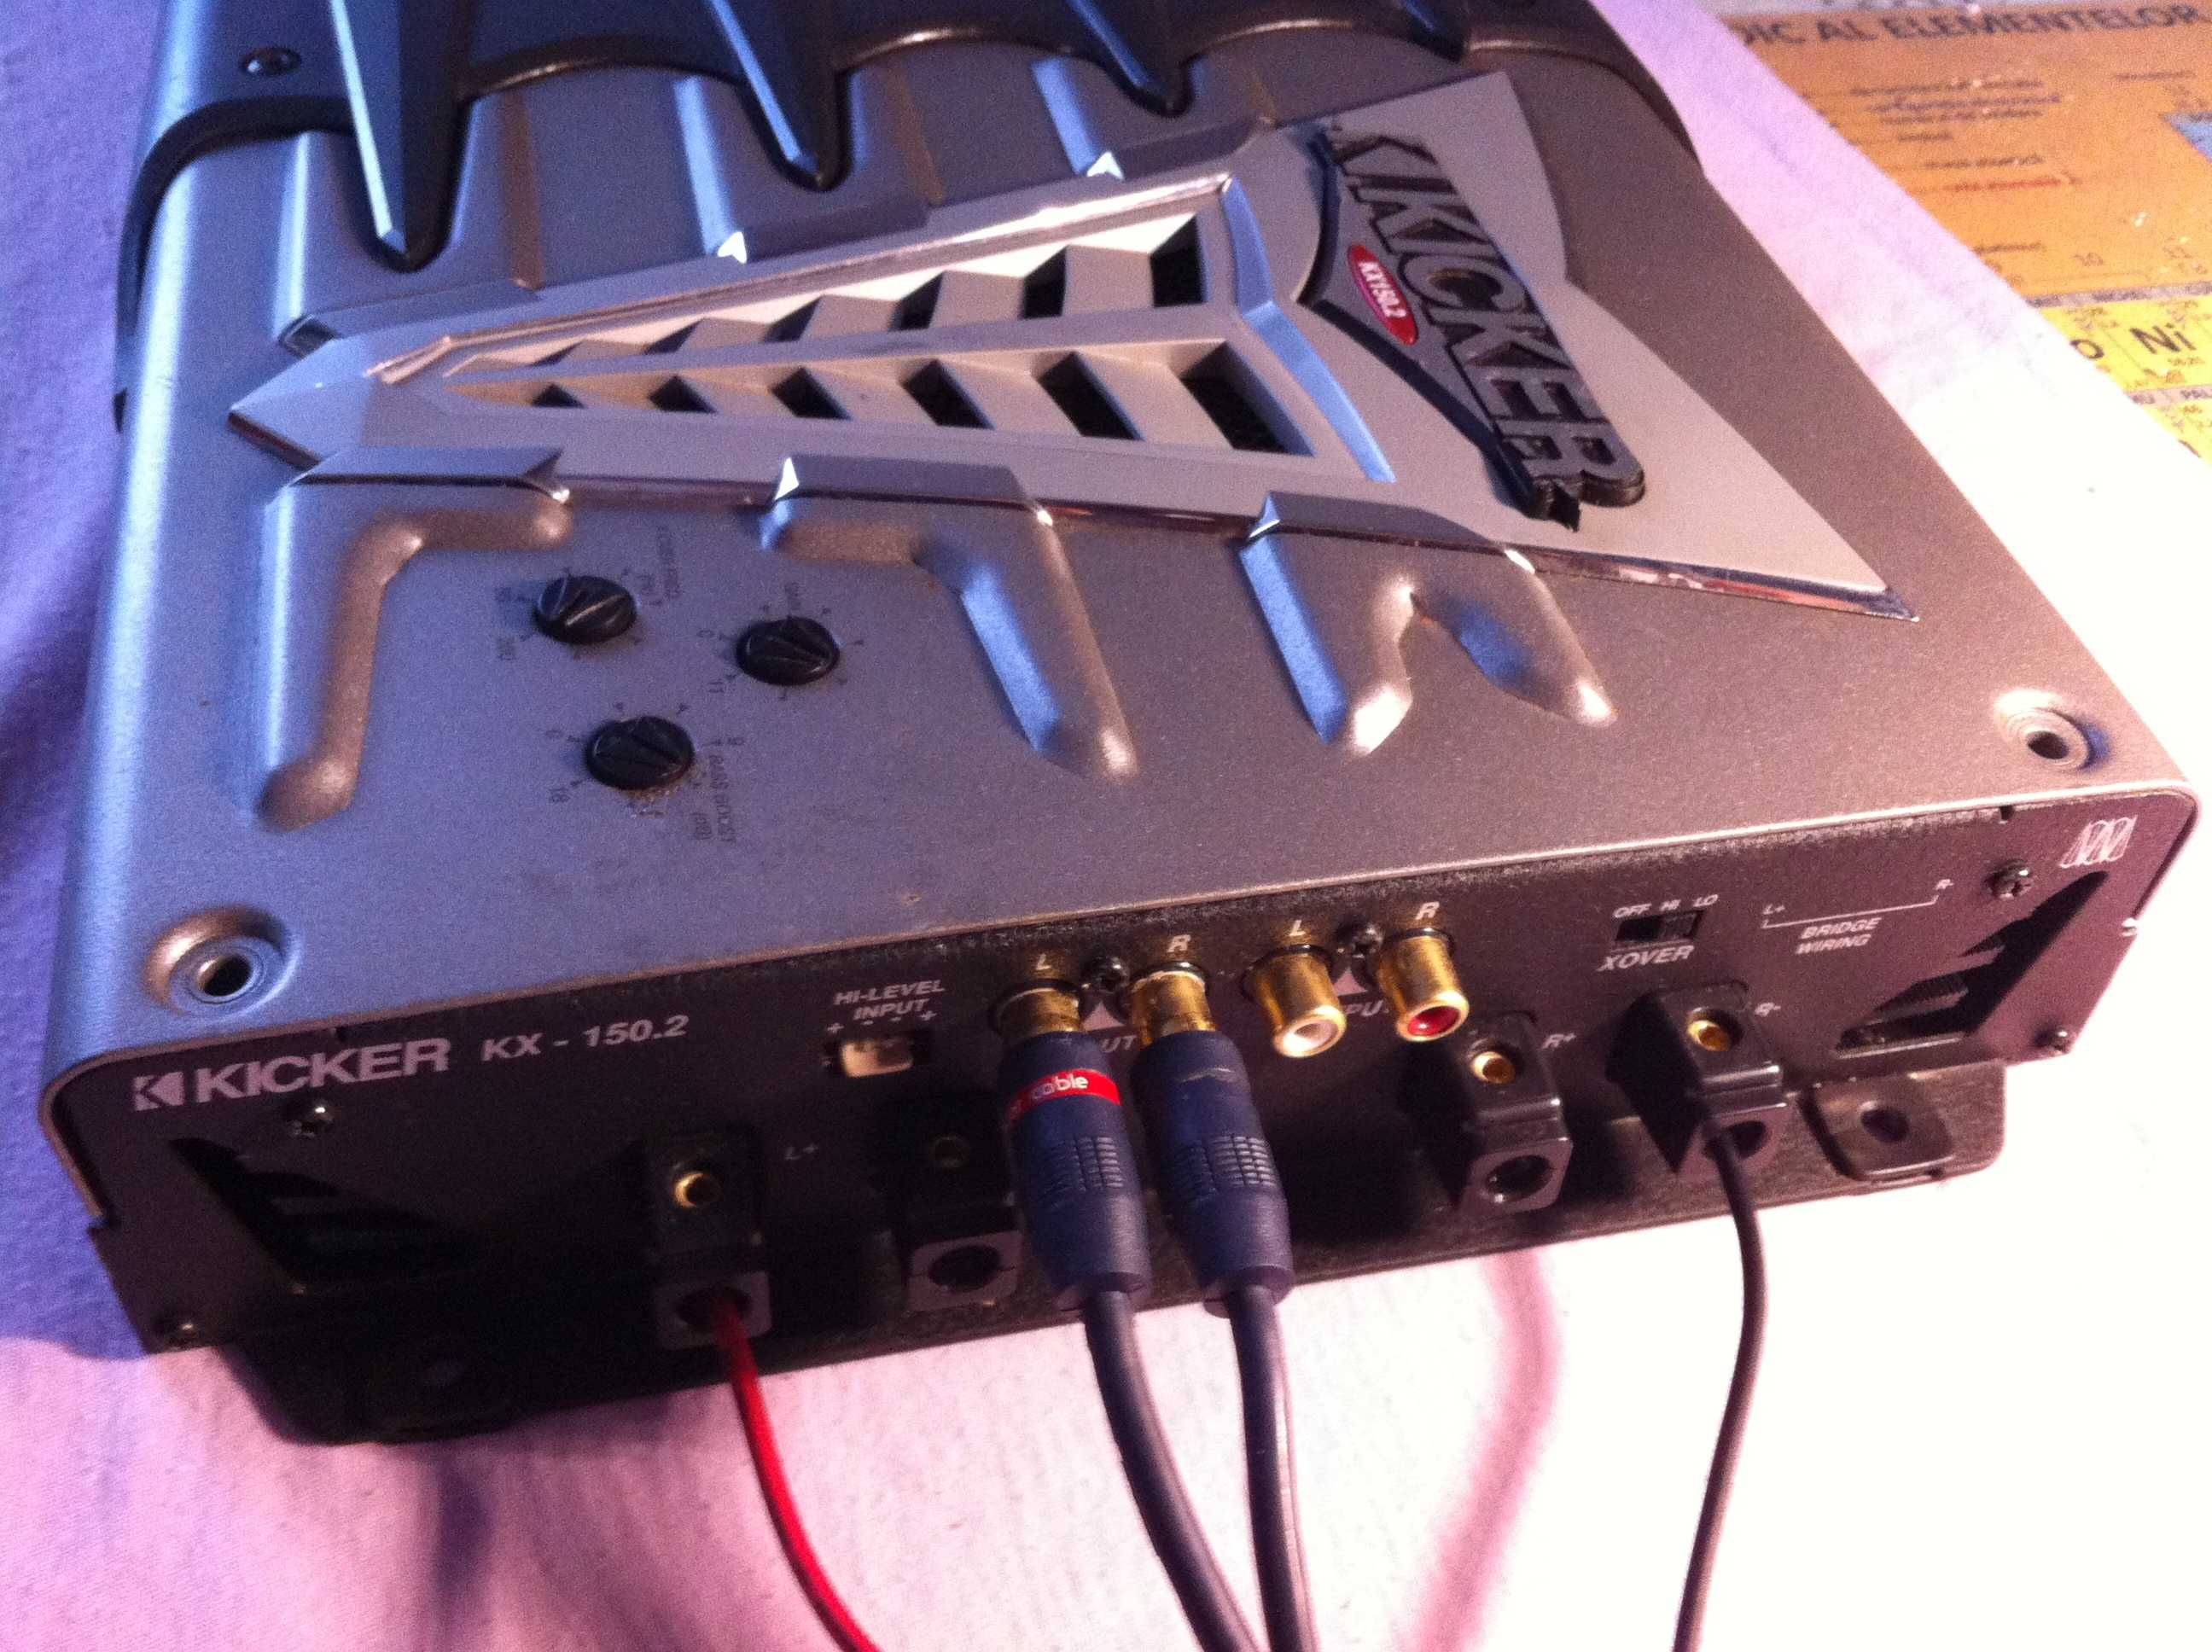 Amplificator Kicker max 600W hertz focal audison pioneer statie